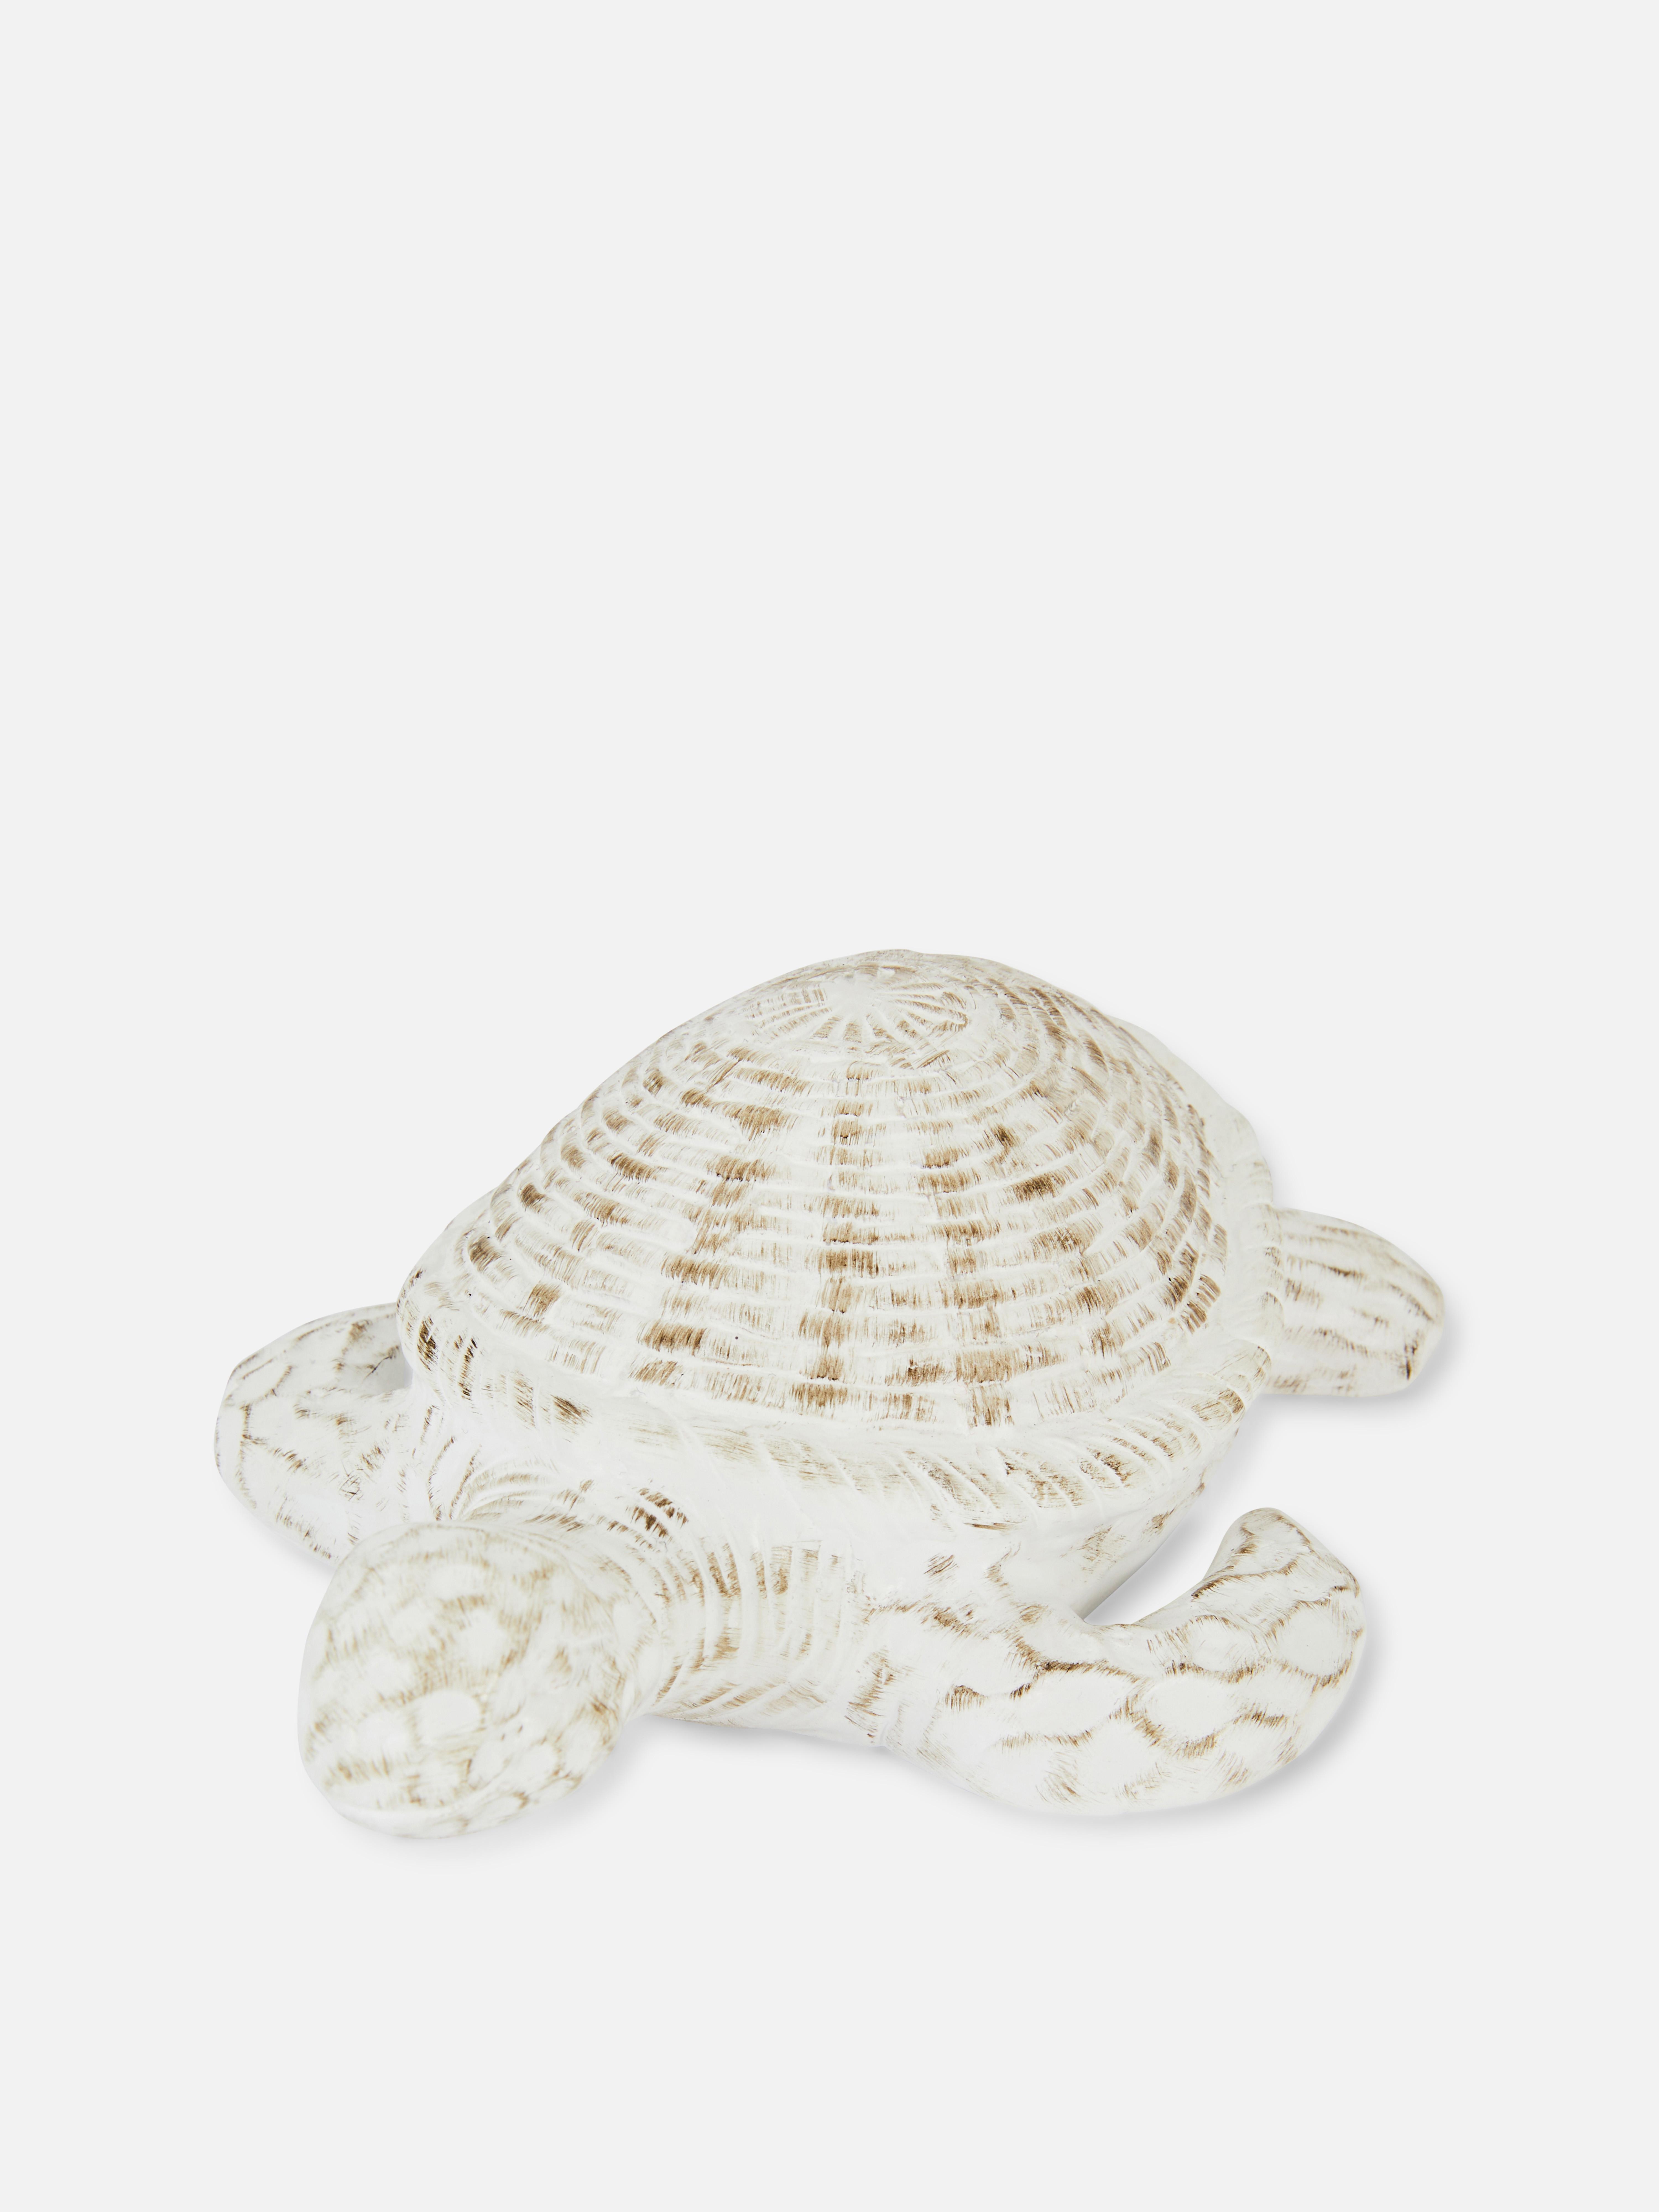 Ceramic Turtle Ornament